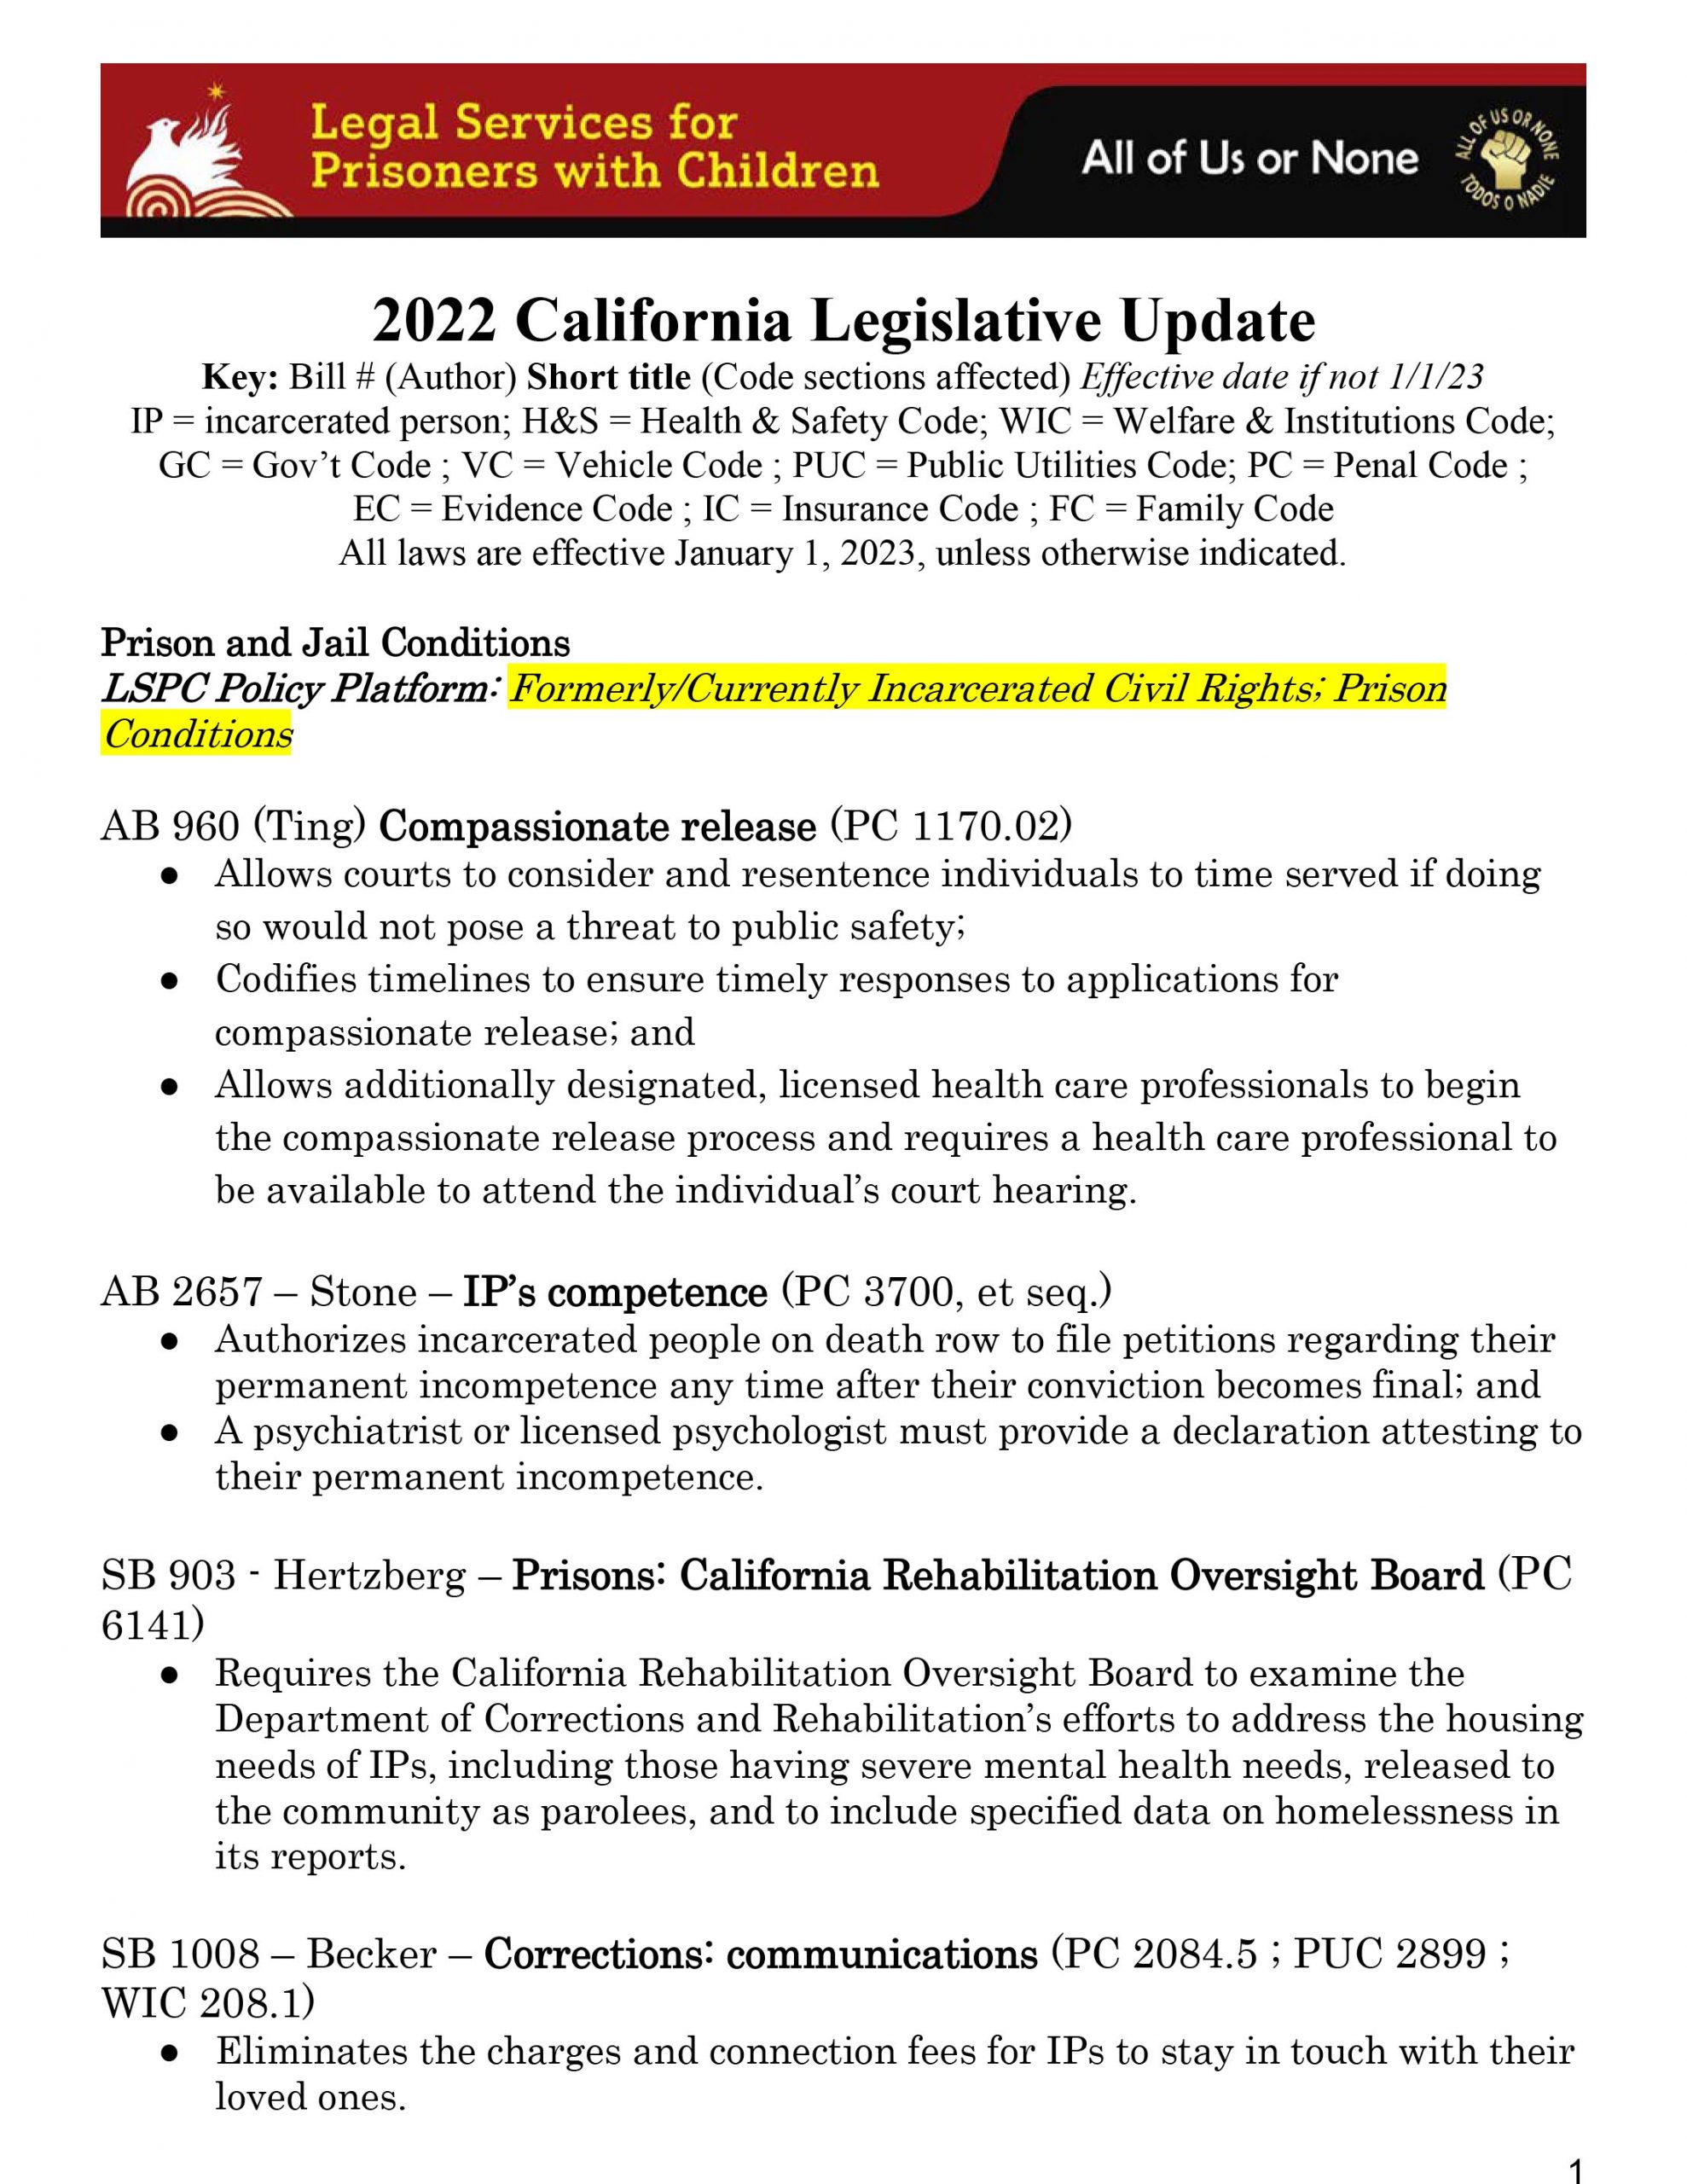 Legislative Update 2022 Final 1.12